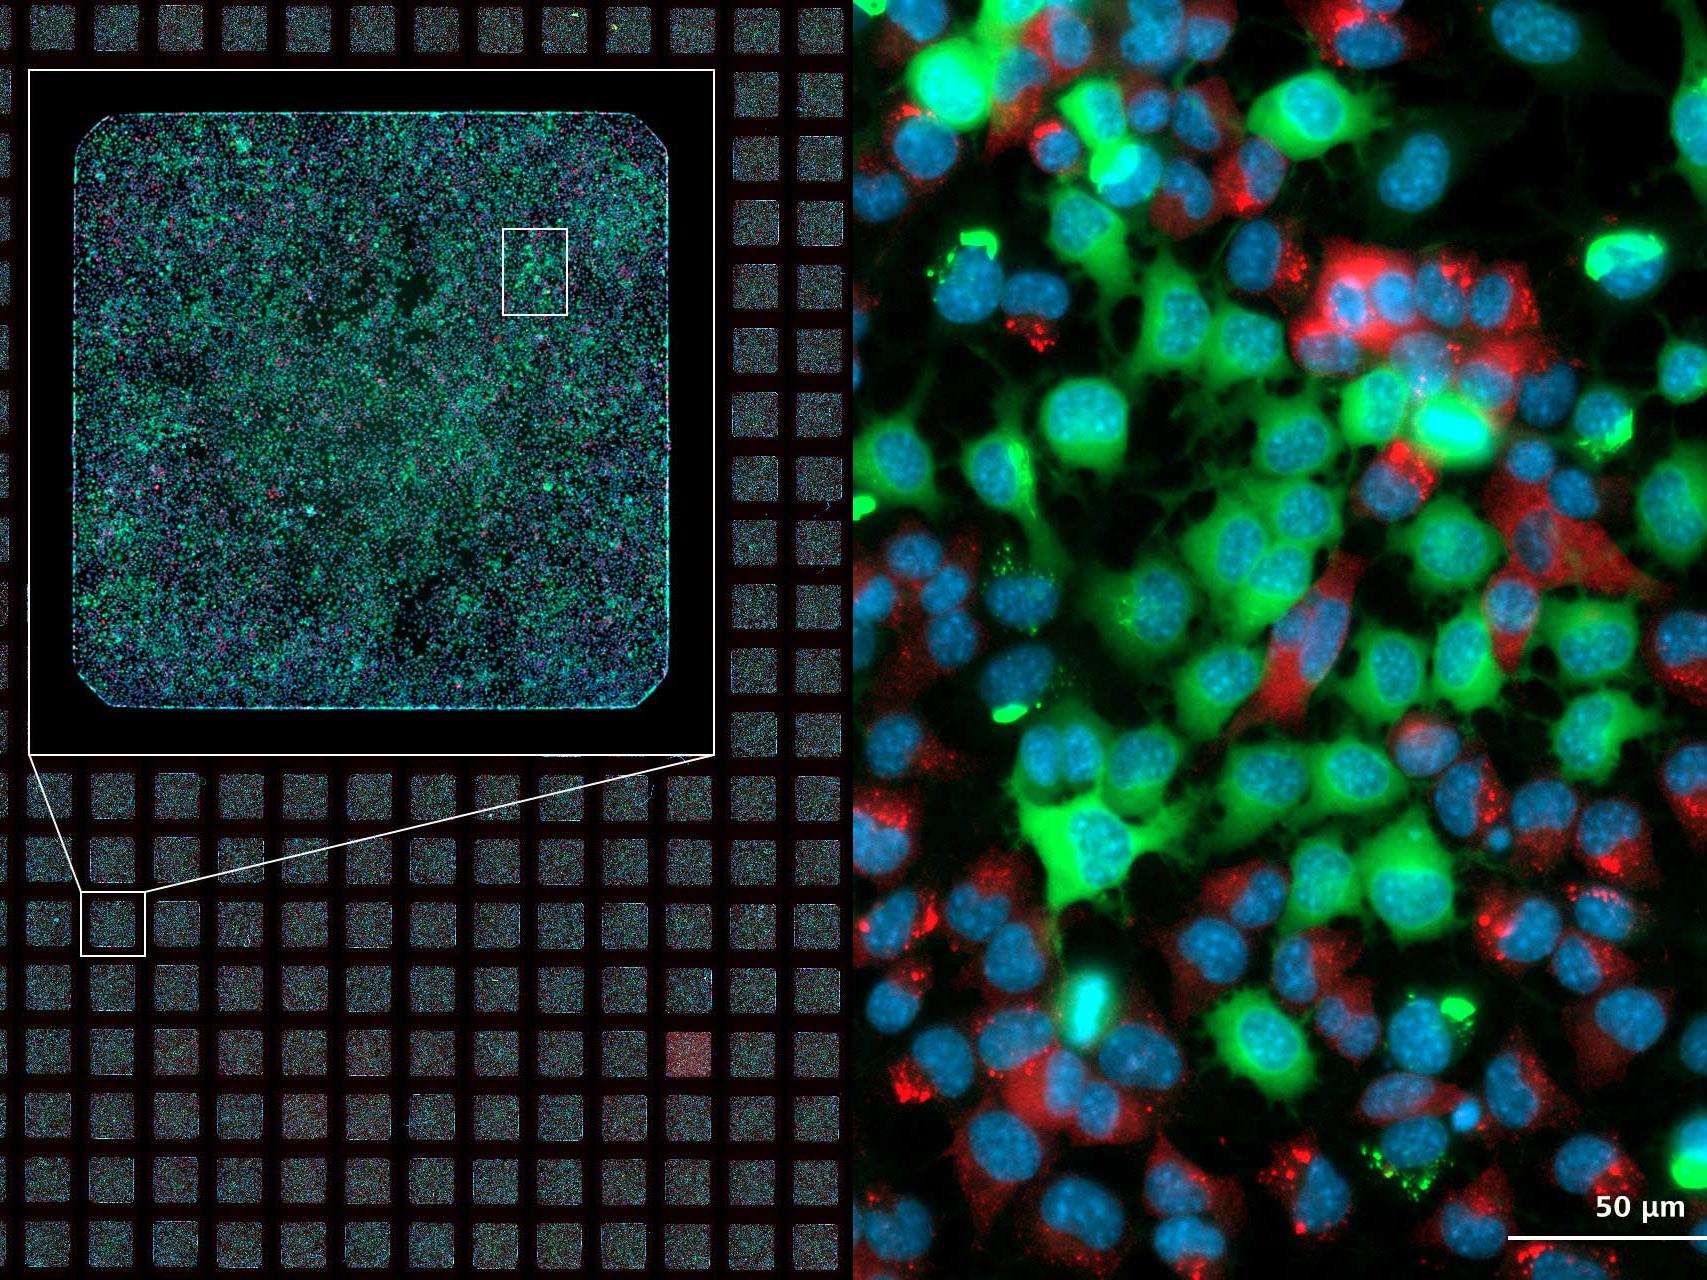 Image d'une plaque de microtitration à 384 cupules réalisée à différents grossissements et selon 3 canaux.